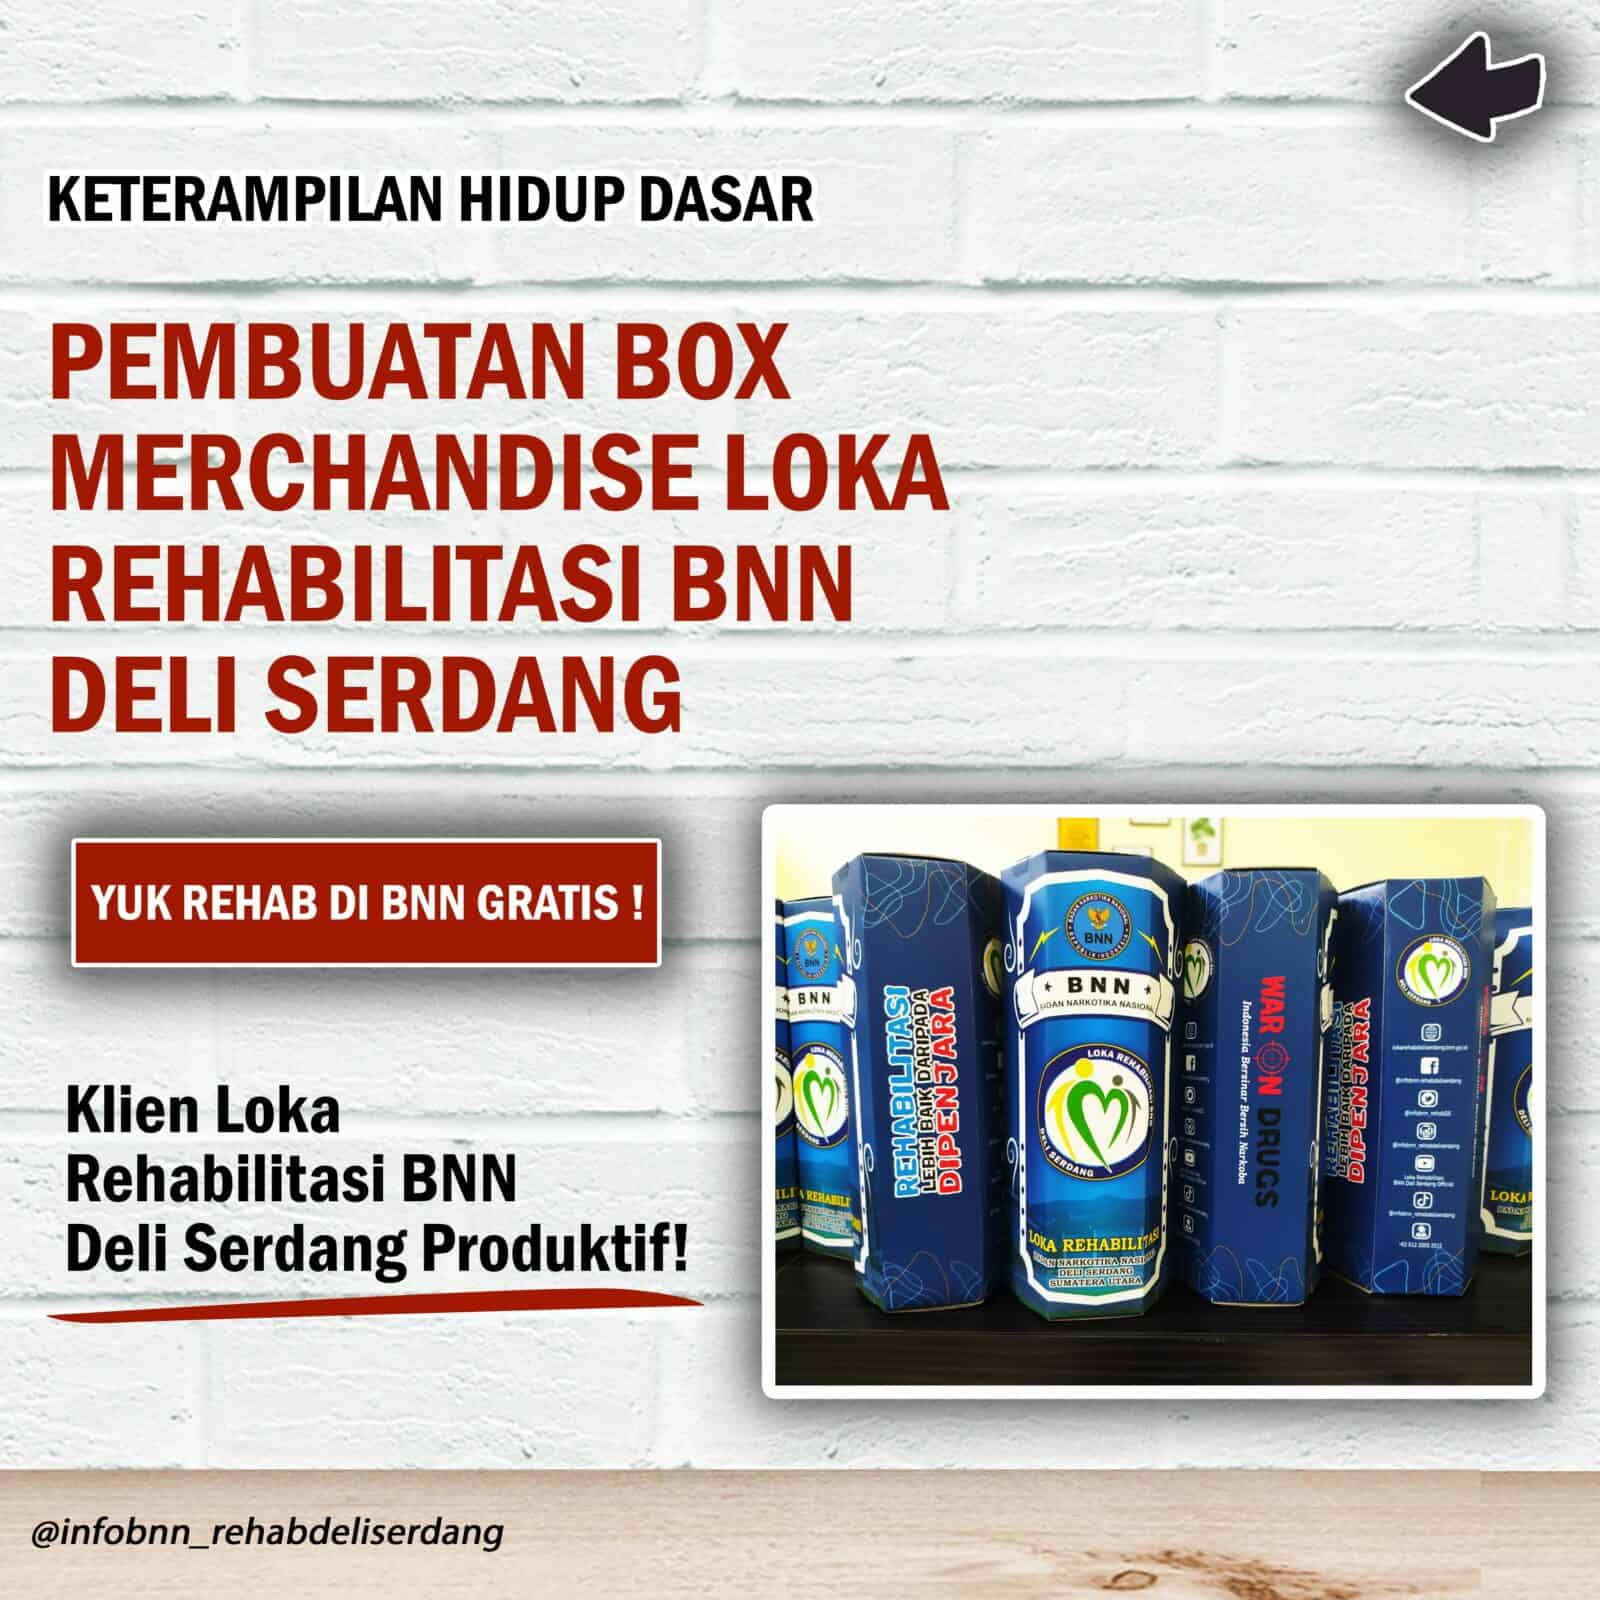 Pembuatan Box Merchandise Loka Rehabilitasi BNN Deli Serdang